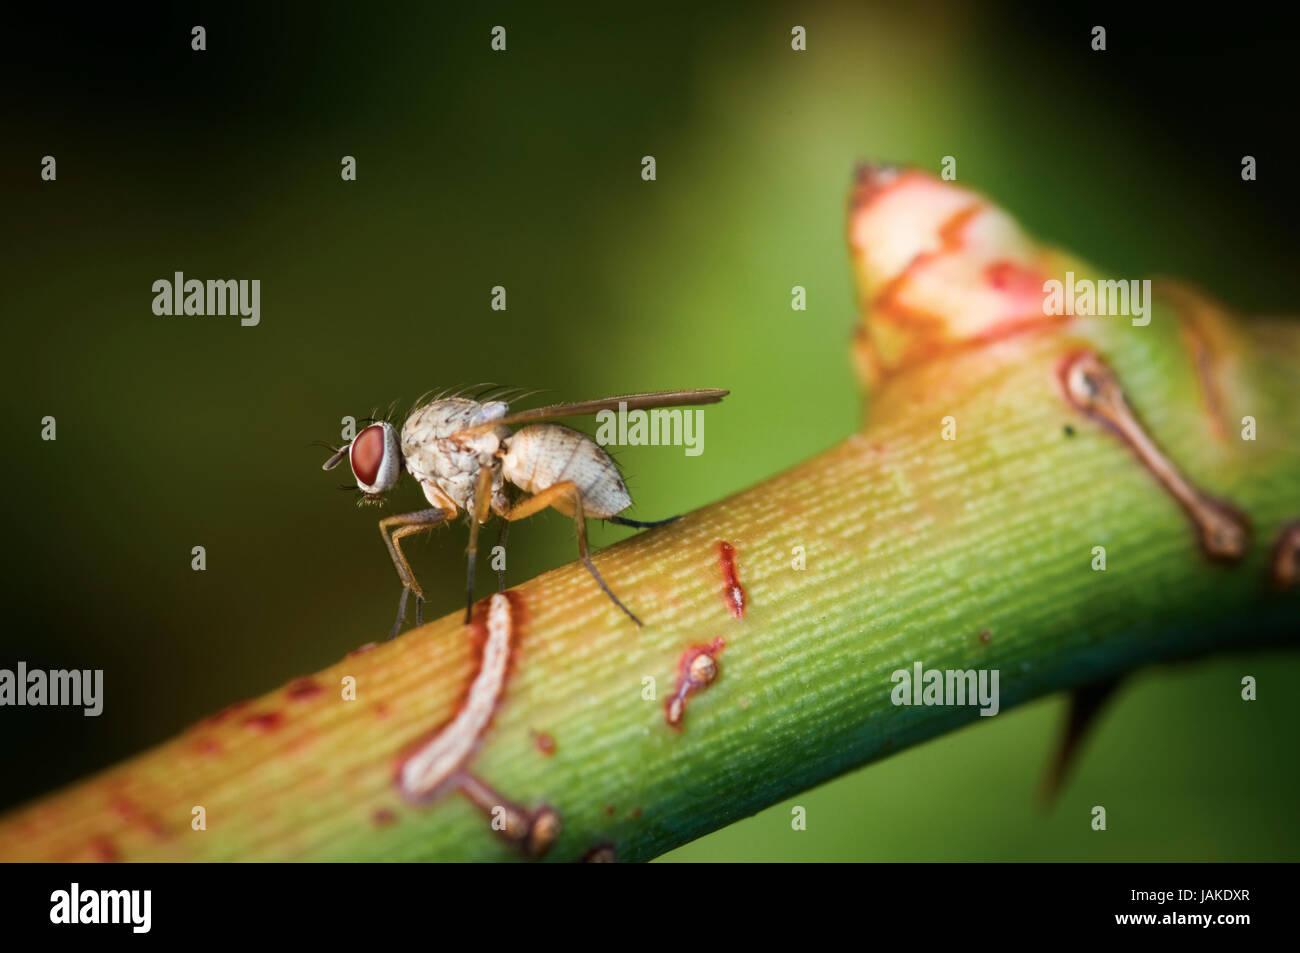 Ganzkörper-Nahaufnahme einer eizelnen Taufliege (Drosophila melanogaster) in seitlicher Ansicht auf einem Zweig mit Knospe sitzend und sich die Vorderbeine putzend Foto Stock